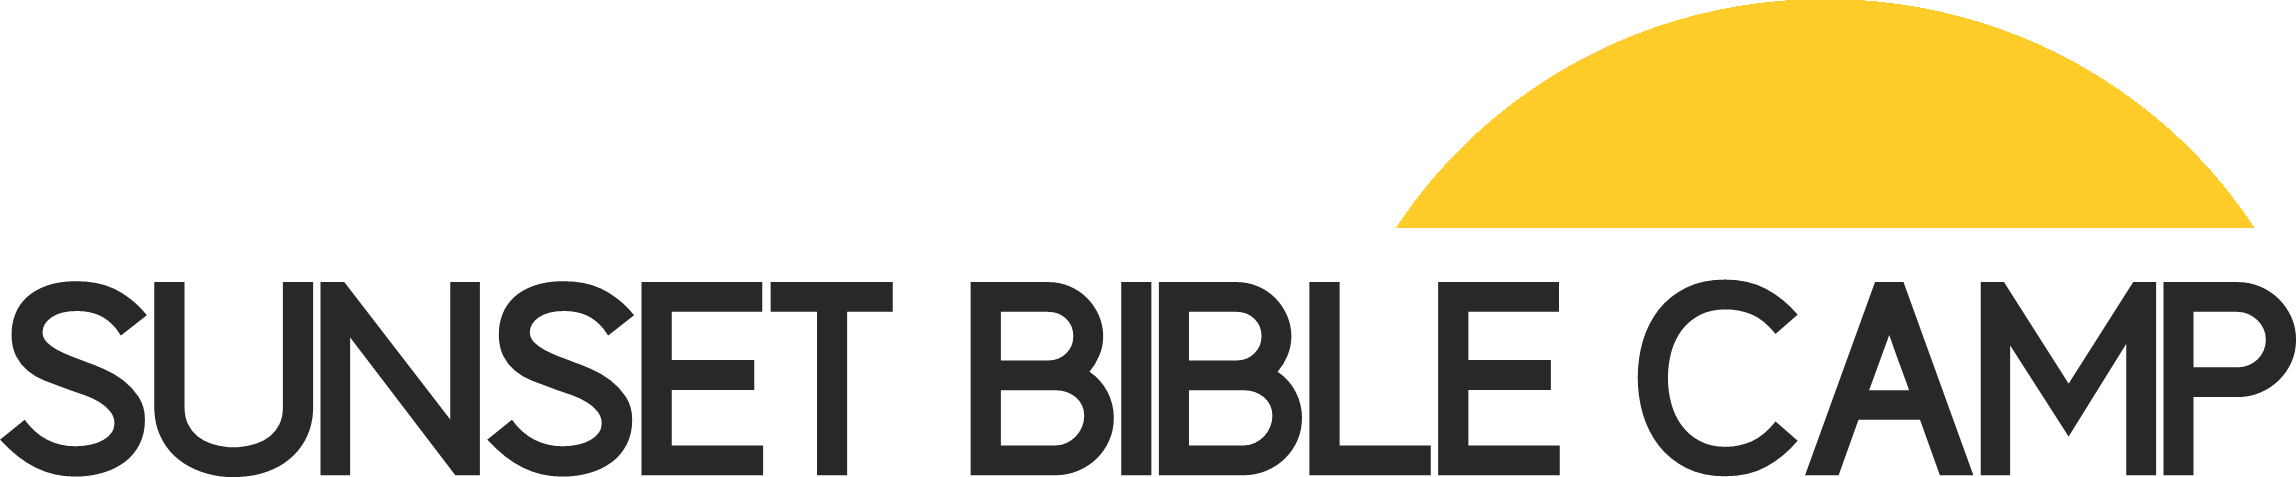 Sunset Bible Camp logo